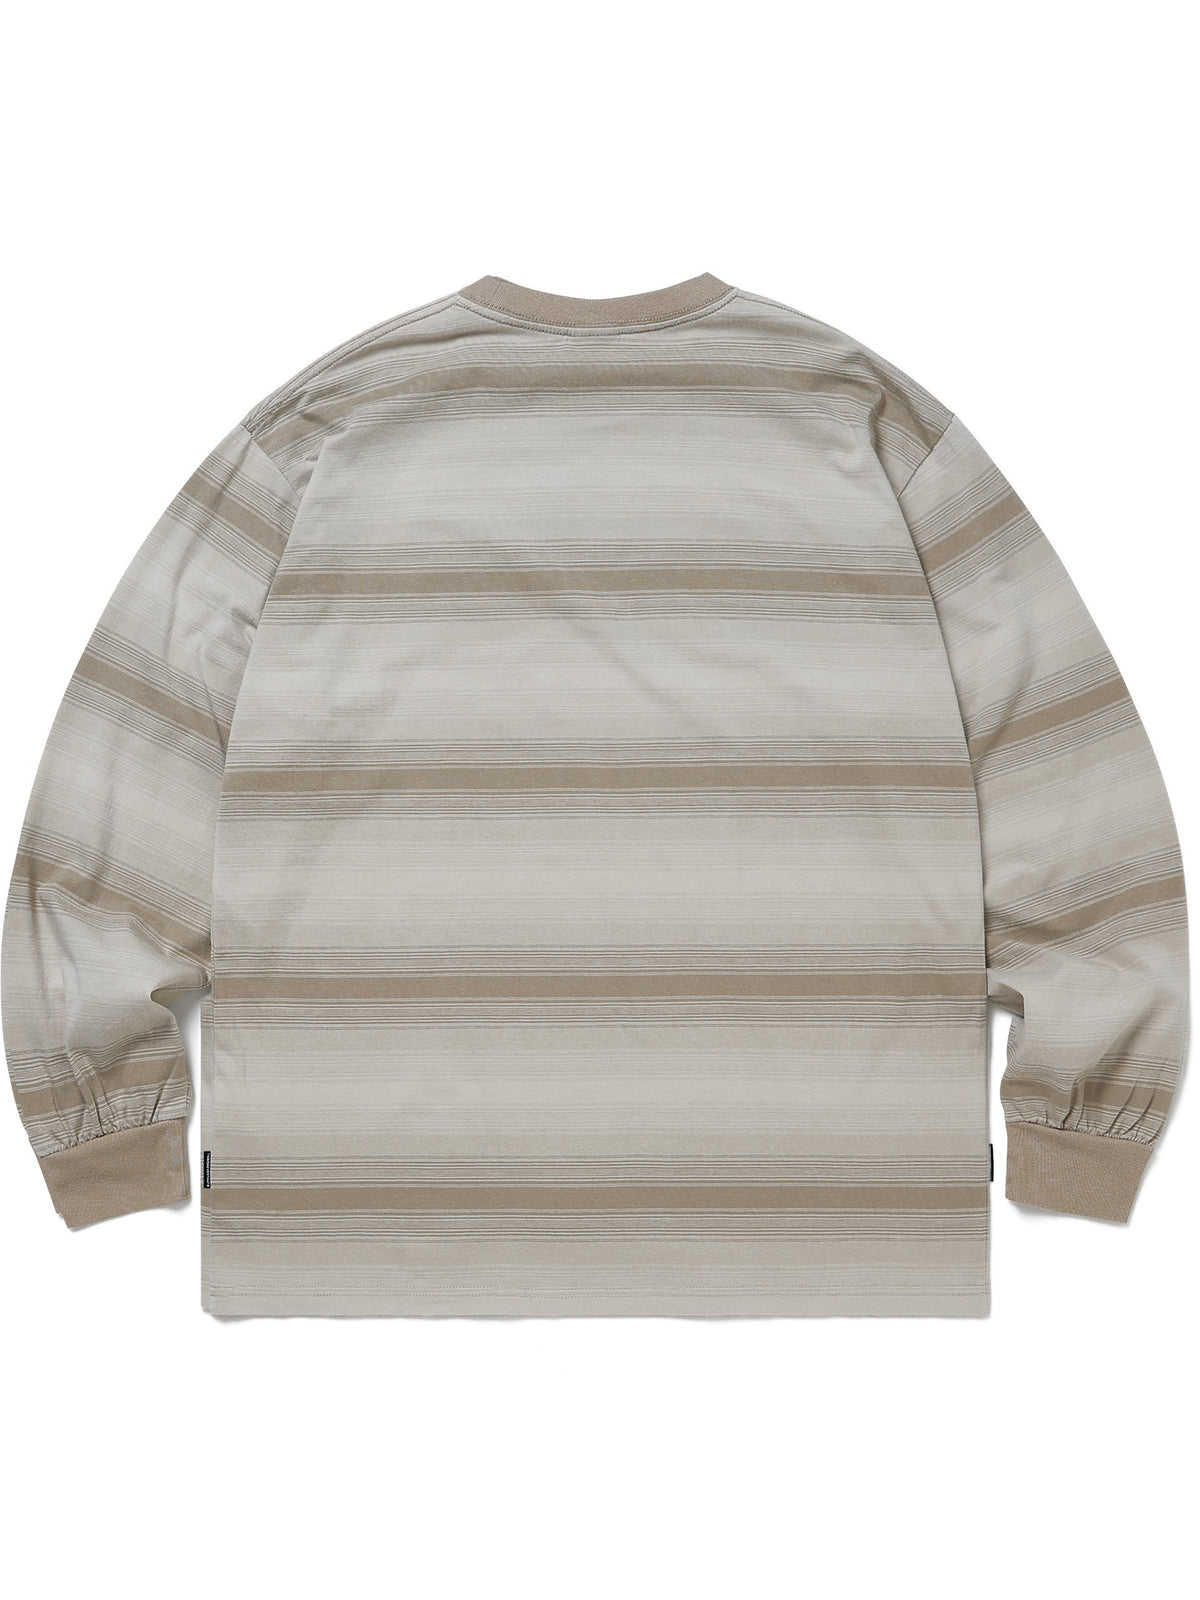 Onyx Striped L/SL Top L/SL T-Shirt 